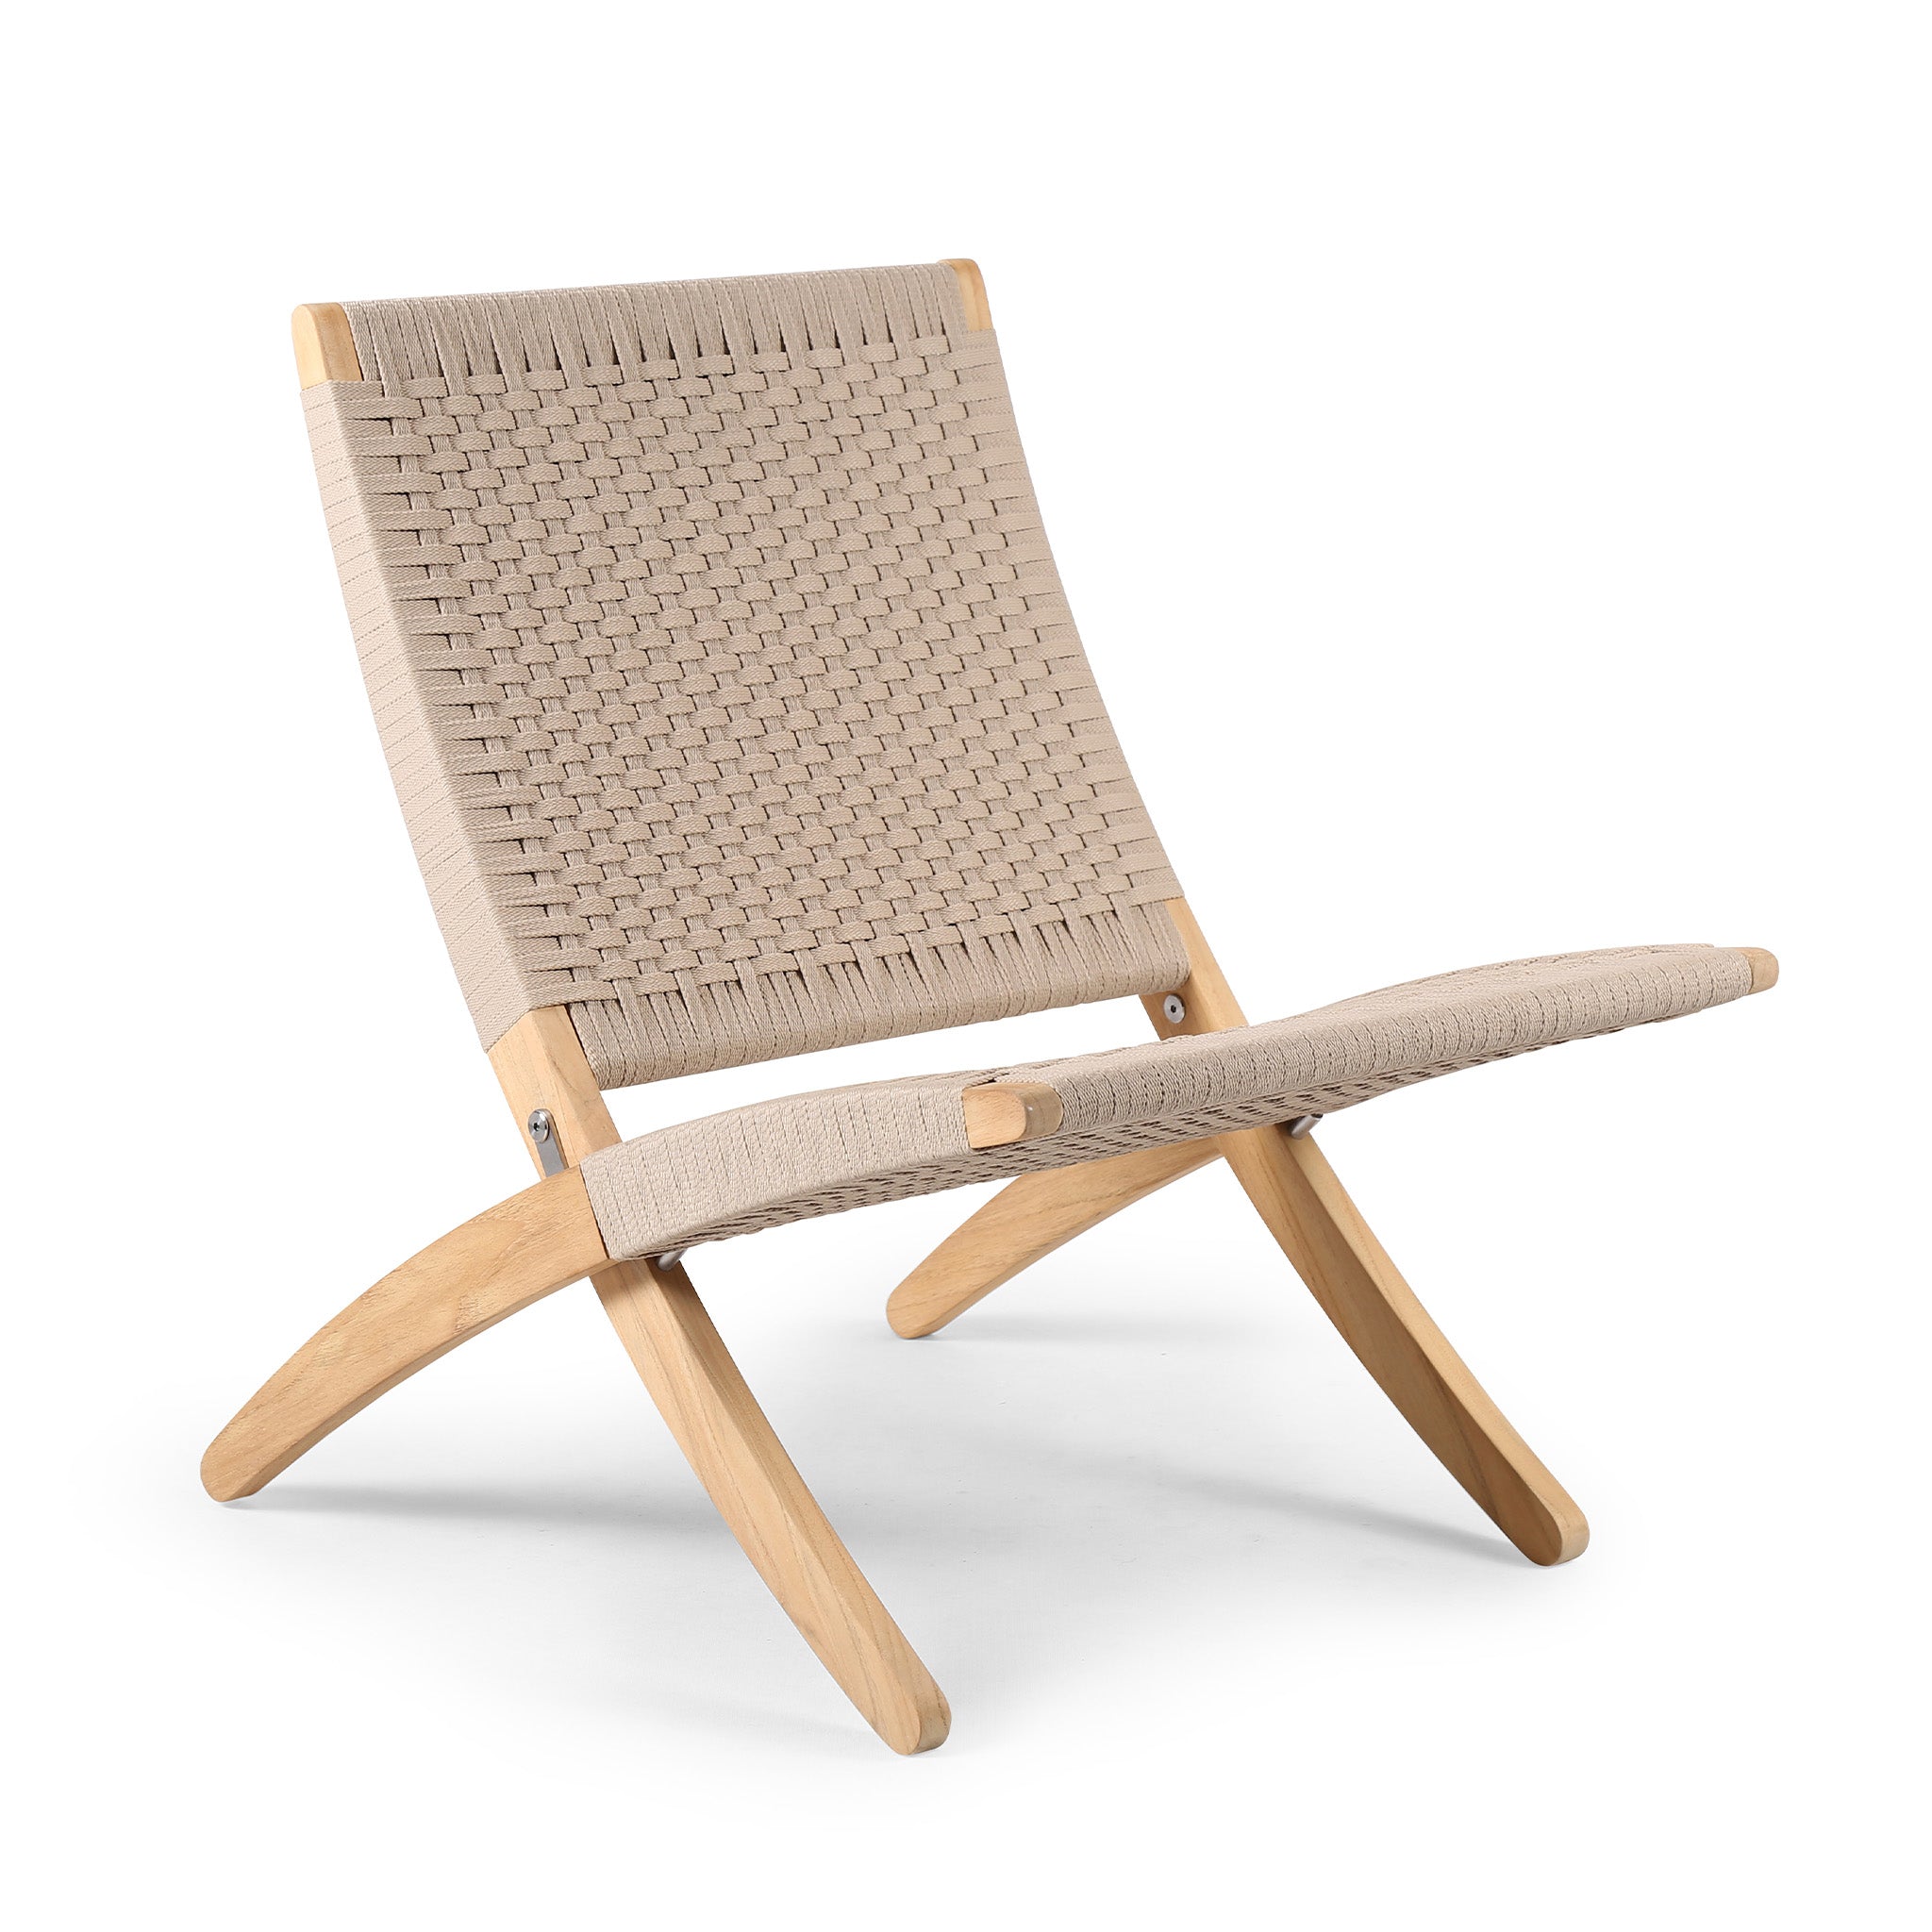 MG501 Cuba Chair - Outdoor by Carl Hansen & Søn